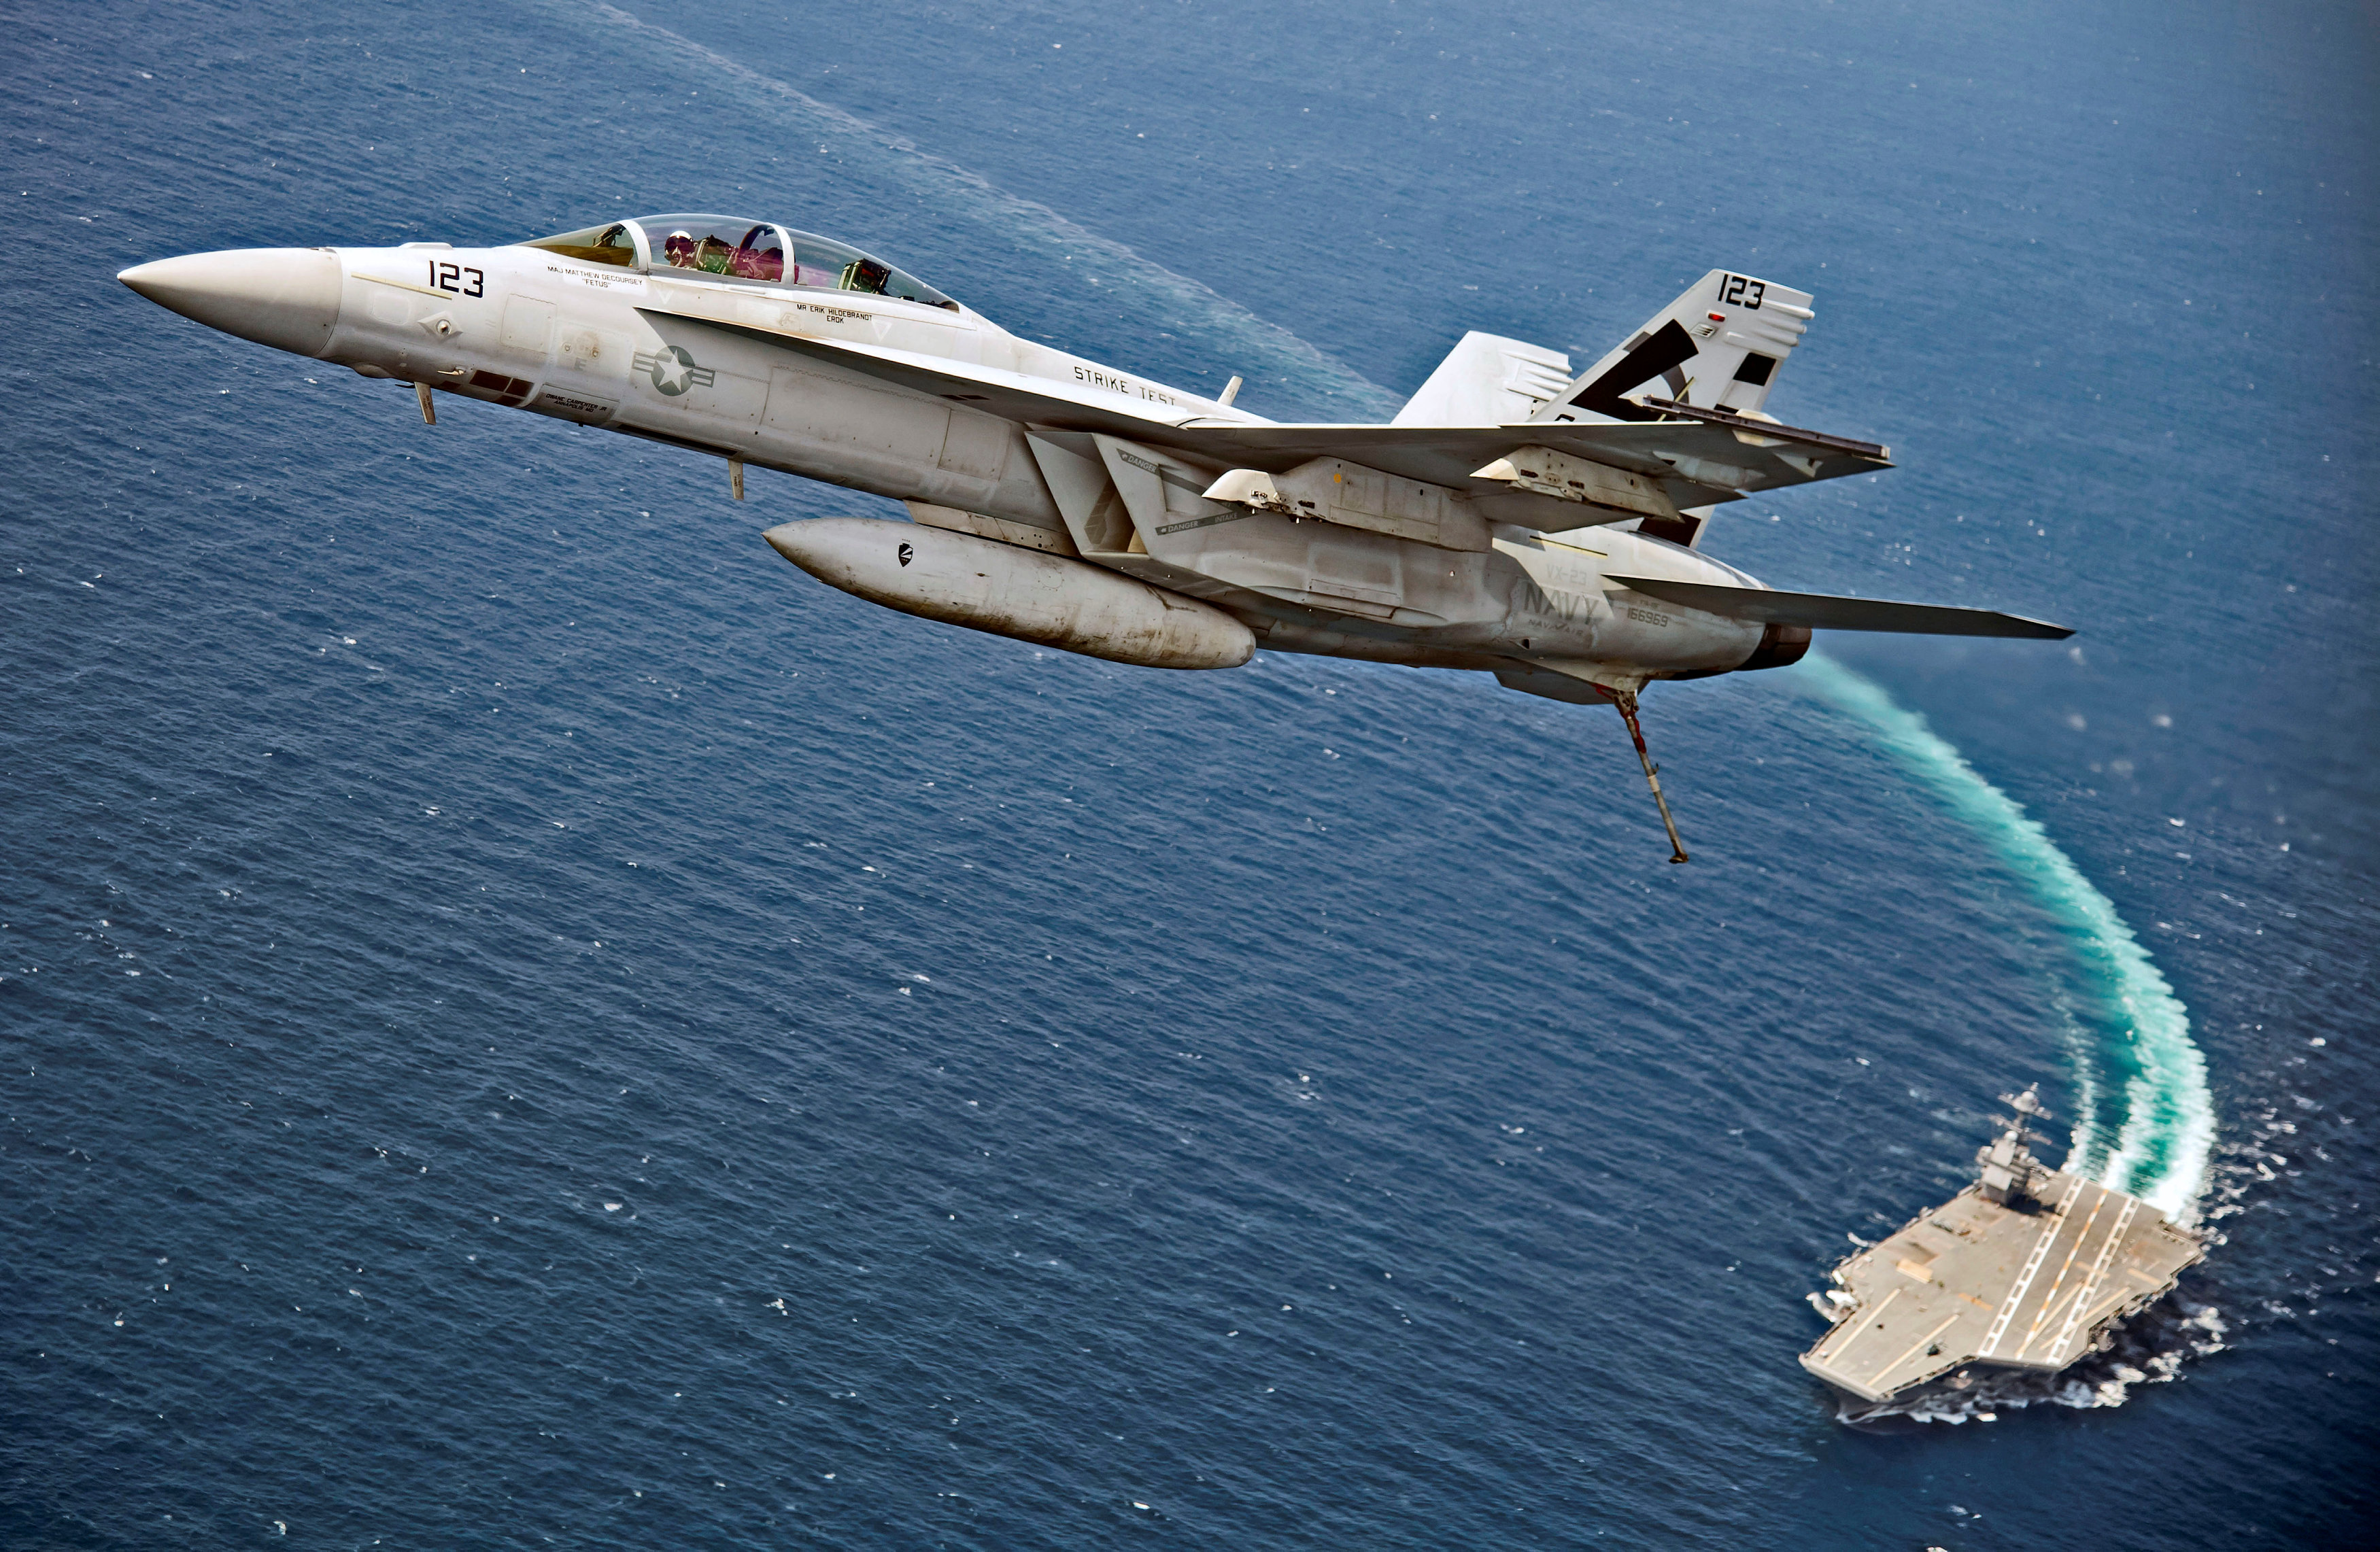 ARCHIVO: Un caza F/A-18F Super Hornet sobrevuela el USS Gerald R. Ford mientras el portaaviones de la Marina estadounidense prueba su sistema de lanzamiento magnético EMALS, que sustituye a la catapulta de vapor, y el nuevo sistema de aterrizaje detenido AAG en el océano Atlántico el 28 de julio de 2017 (Reuters)